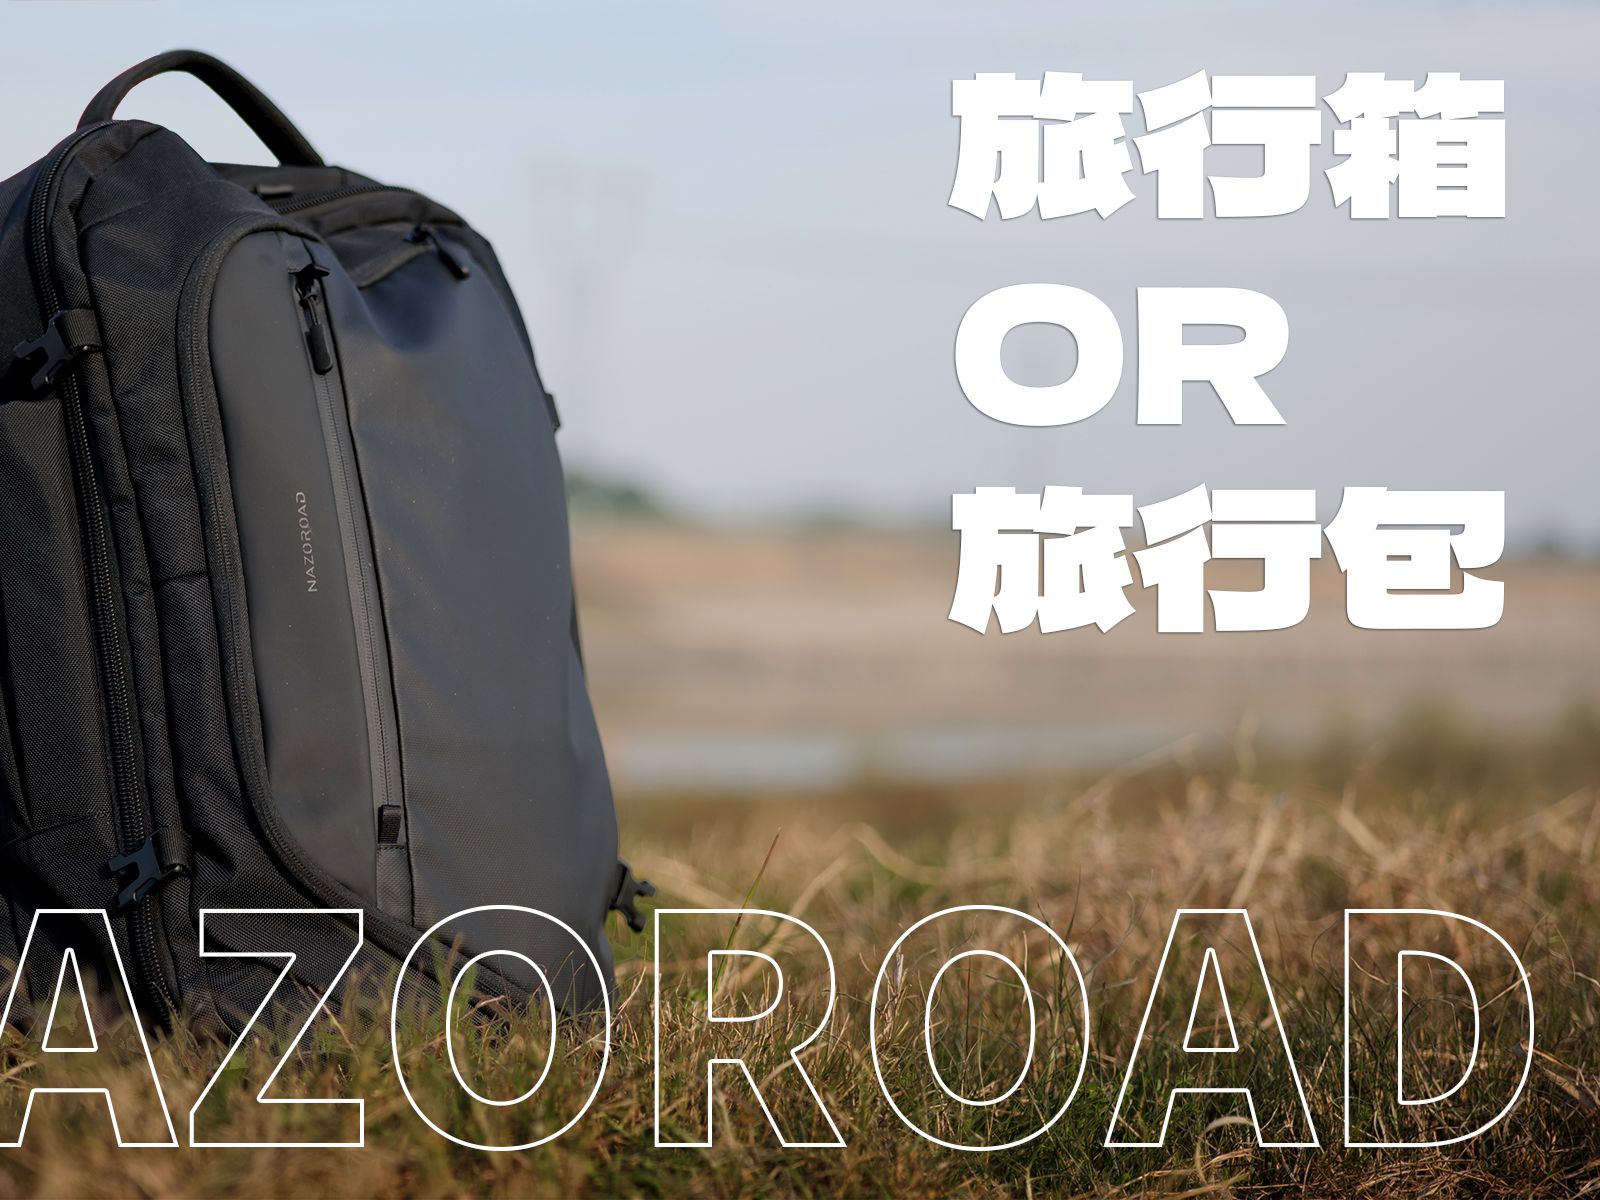 【旅行包】一款伪装成旅行箱的超大容量包包——Nazoroad Blazer